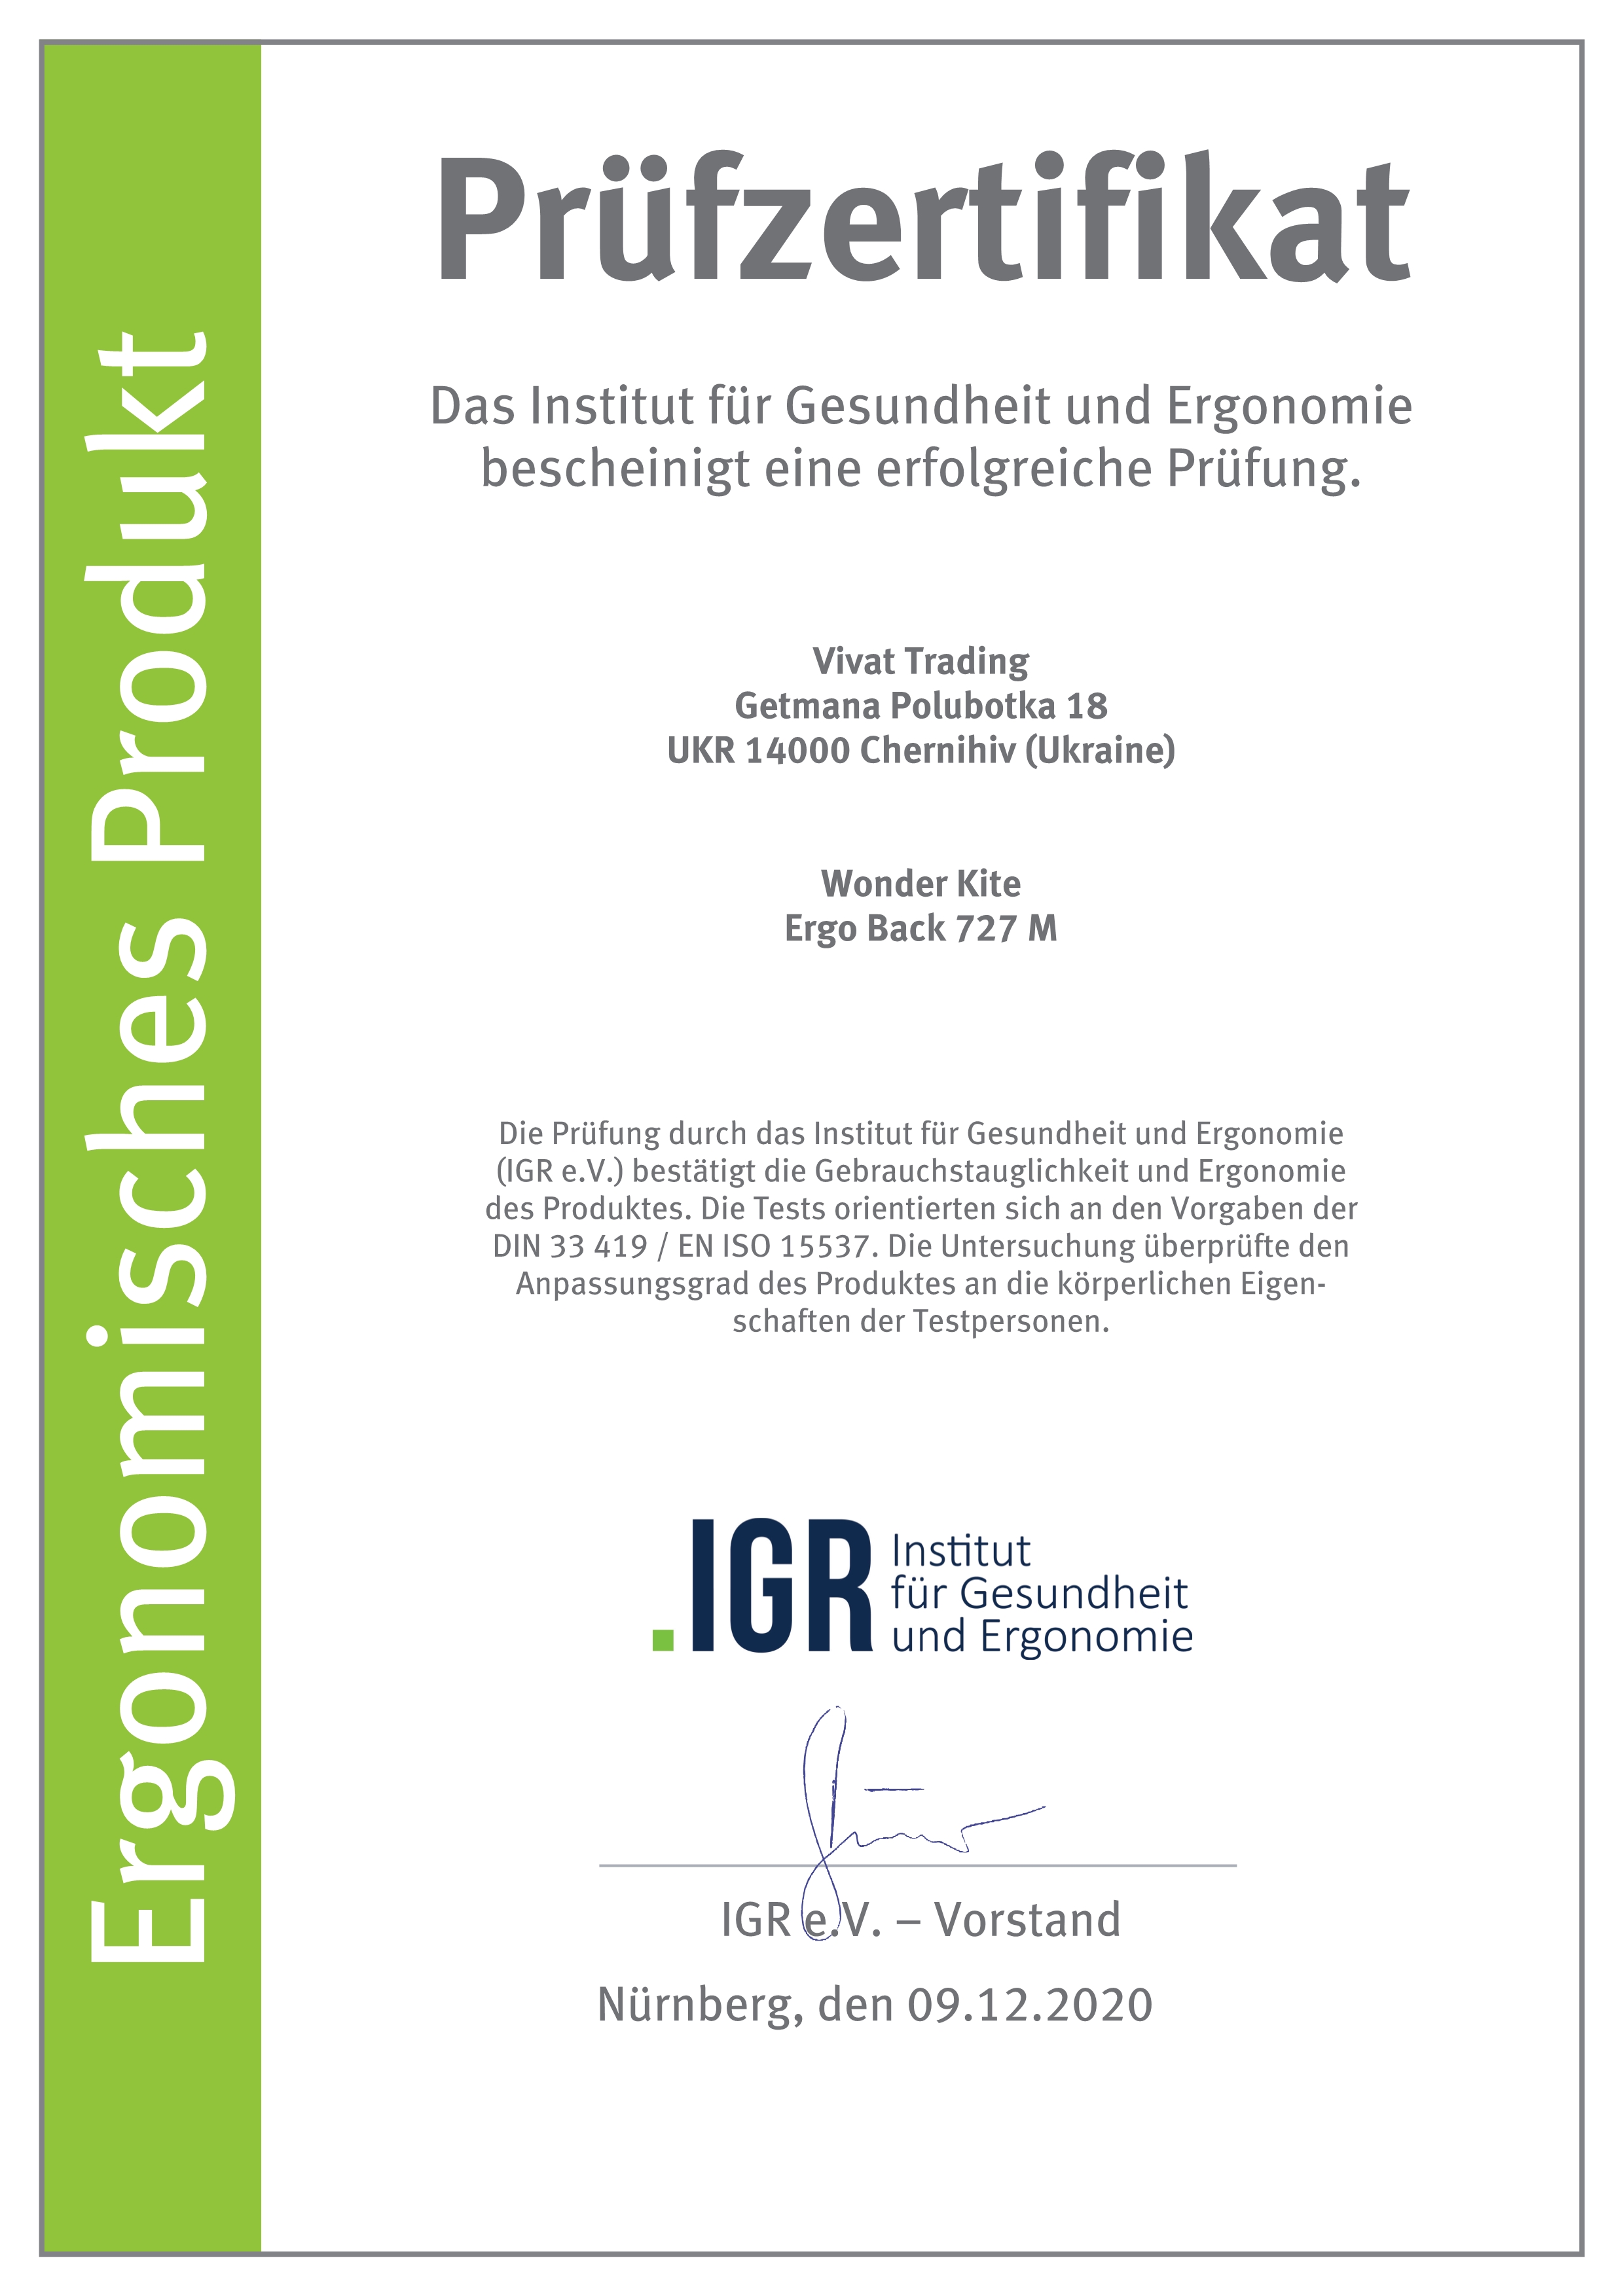 Сертифікат Німецького інституту здоров'я і ергономіки IGR - модель 727  Wonder Kite